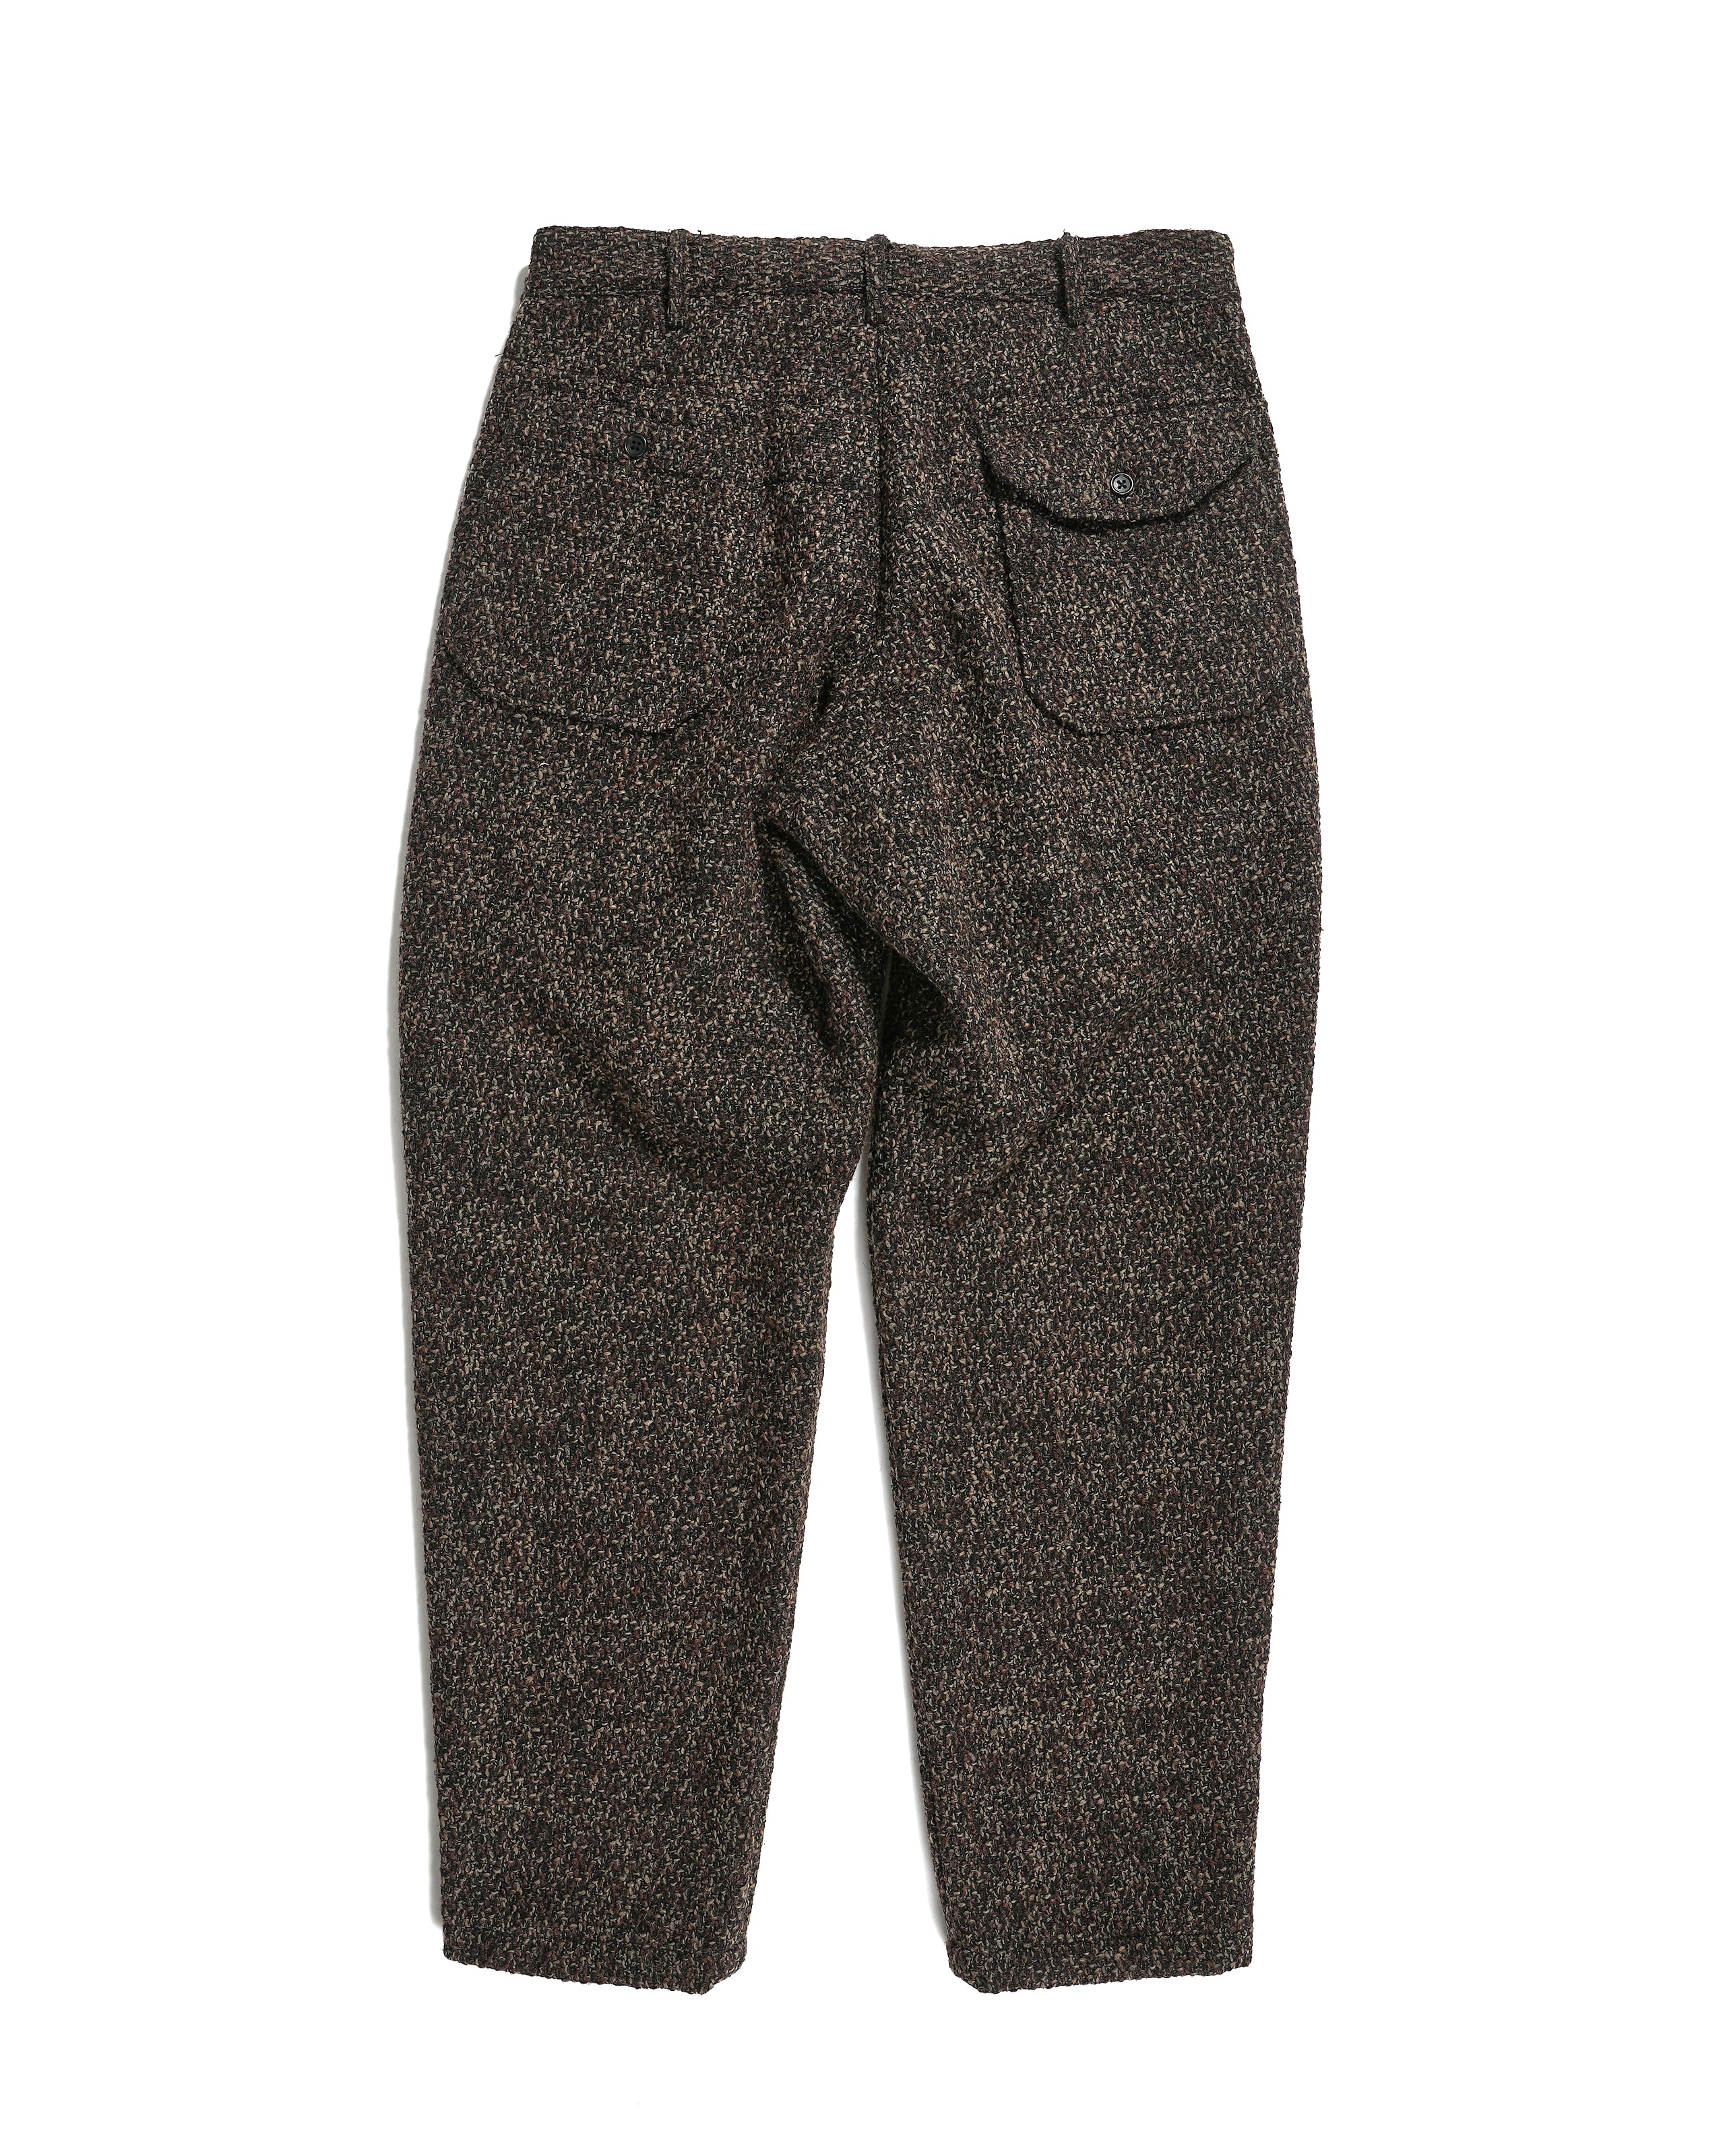 Engineered Garments Carlyle Pant - Dk Brown Polyester Wool Tweed Boucle